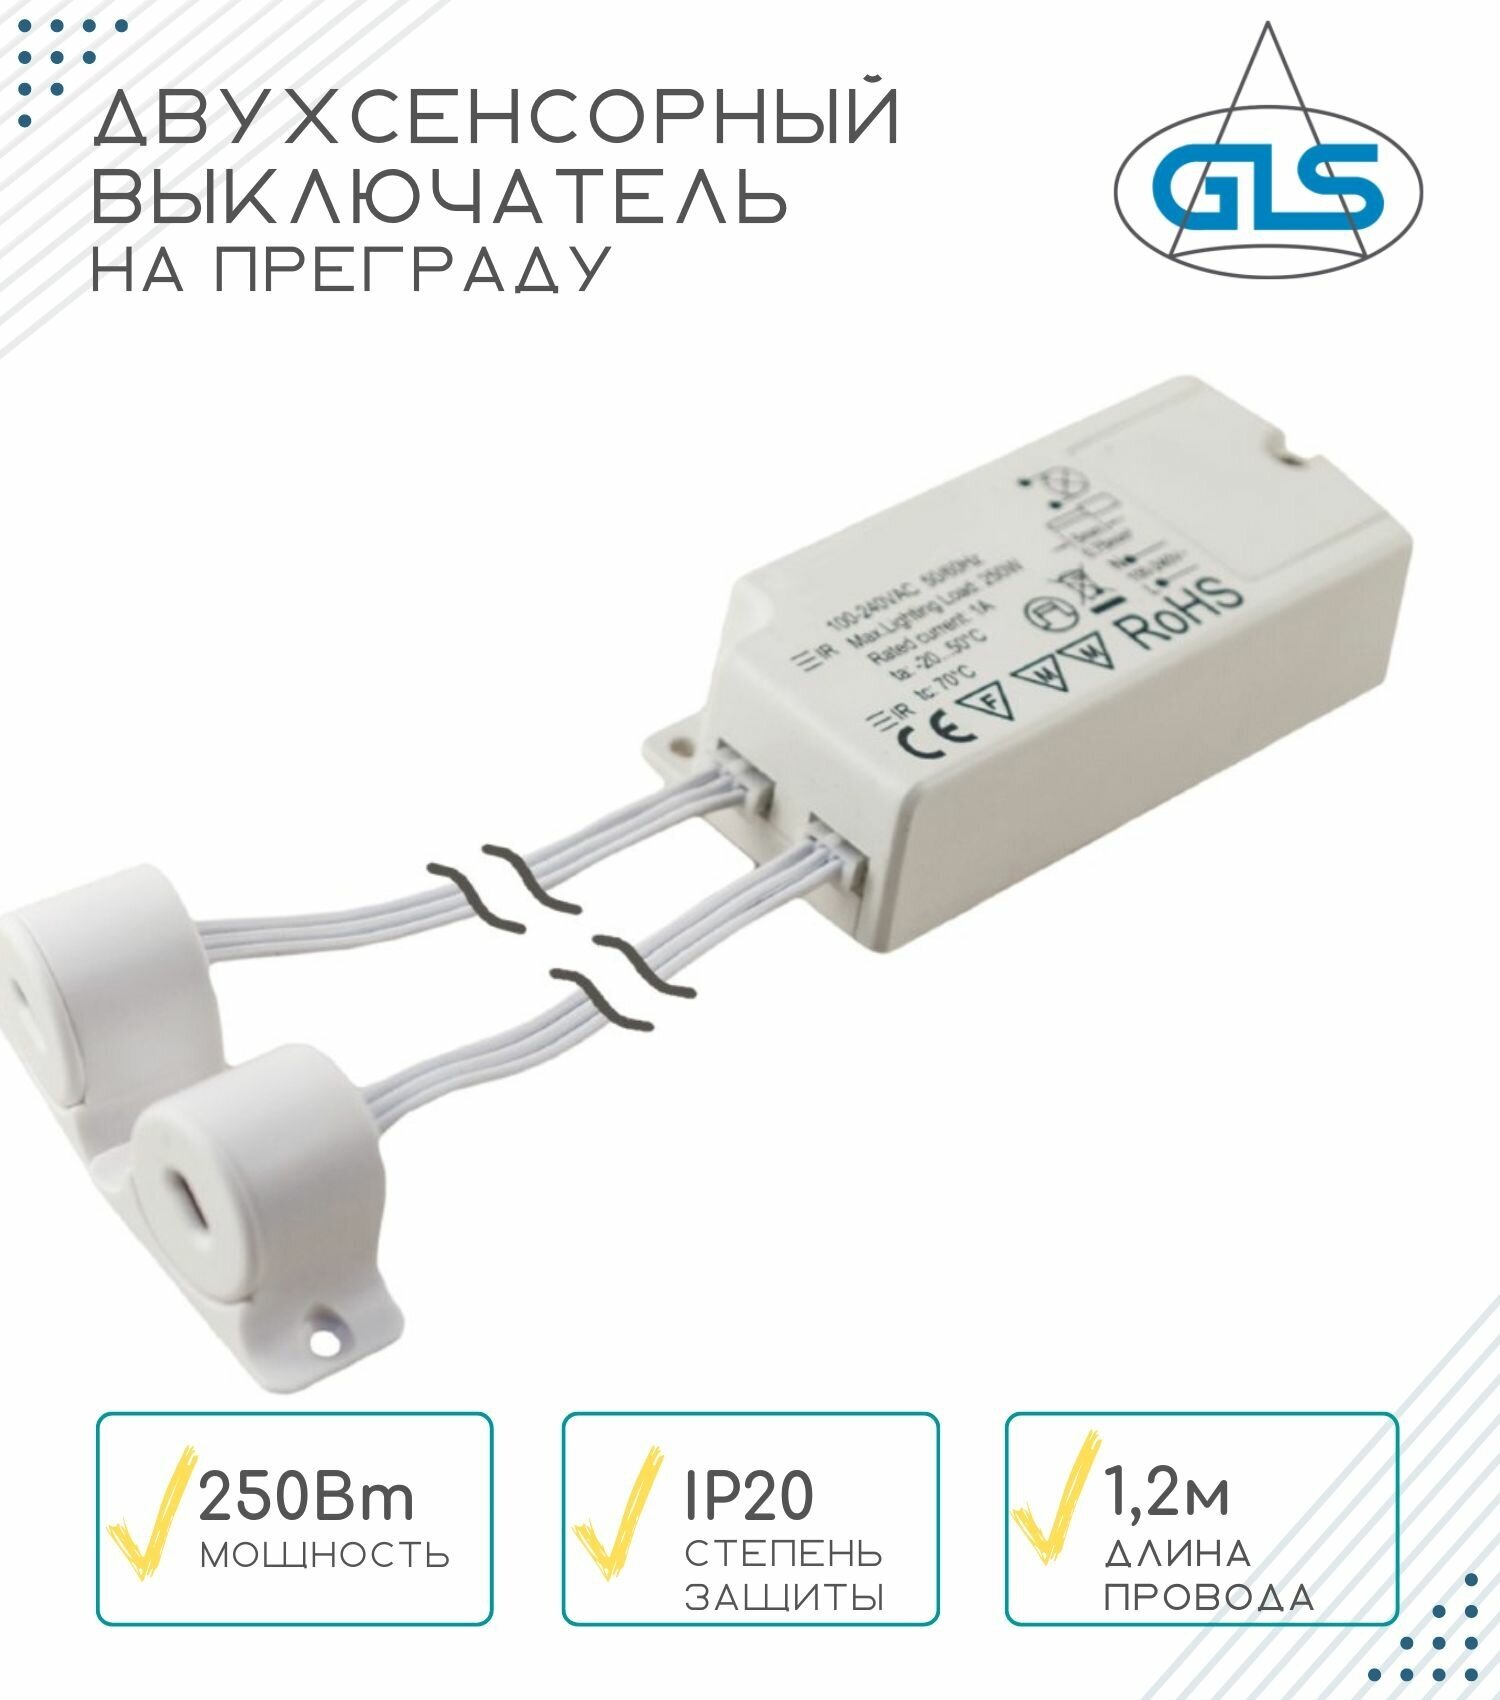 Двухсенсорный выключатель на преграду PM-418B (100-240V/250W), GLS, ИК выключатель